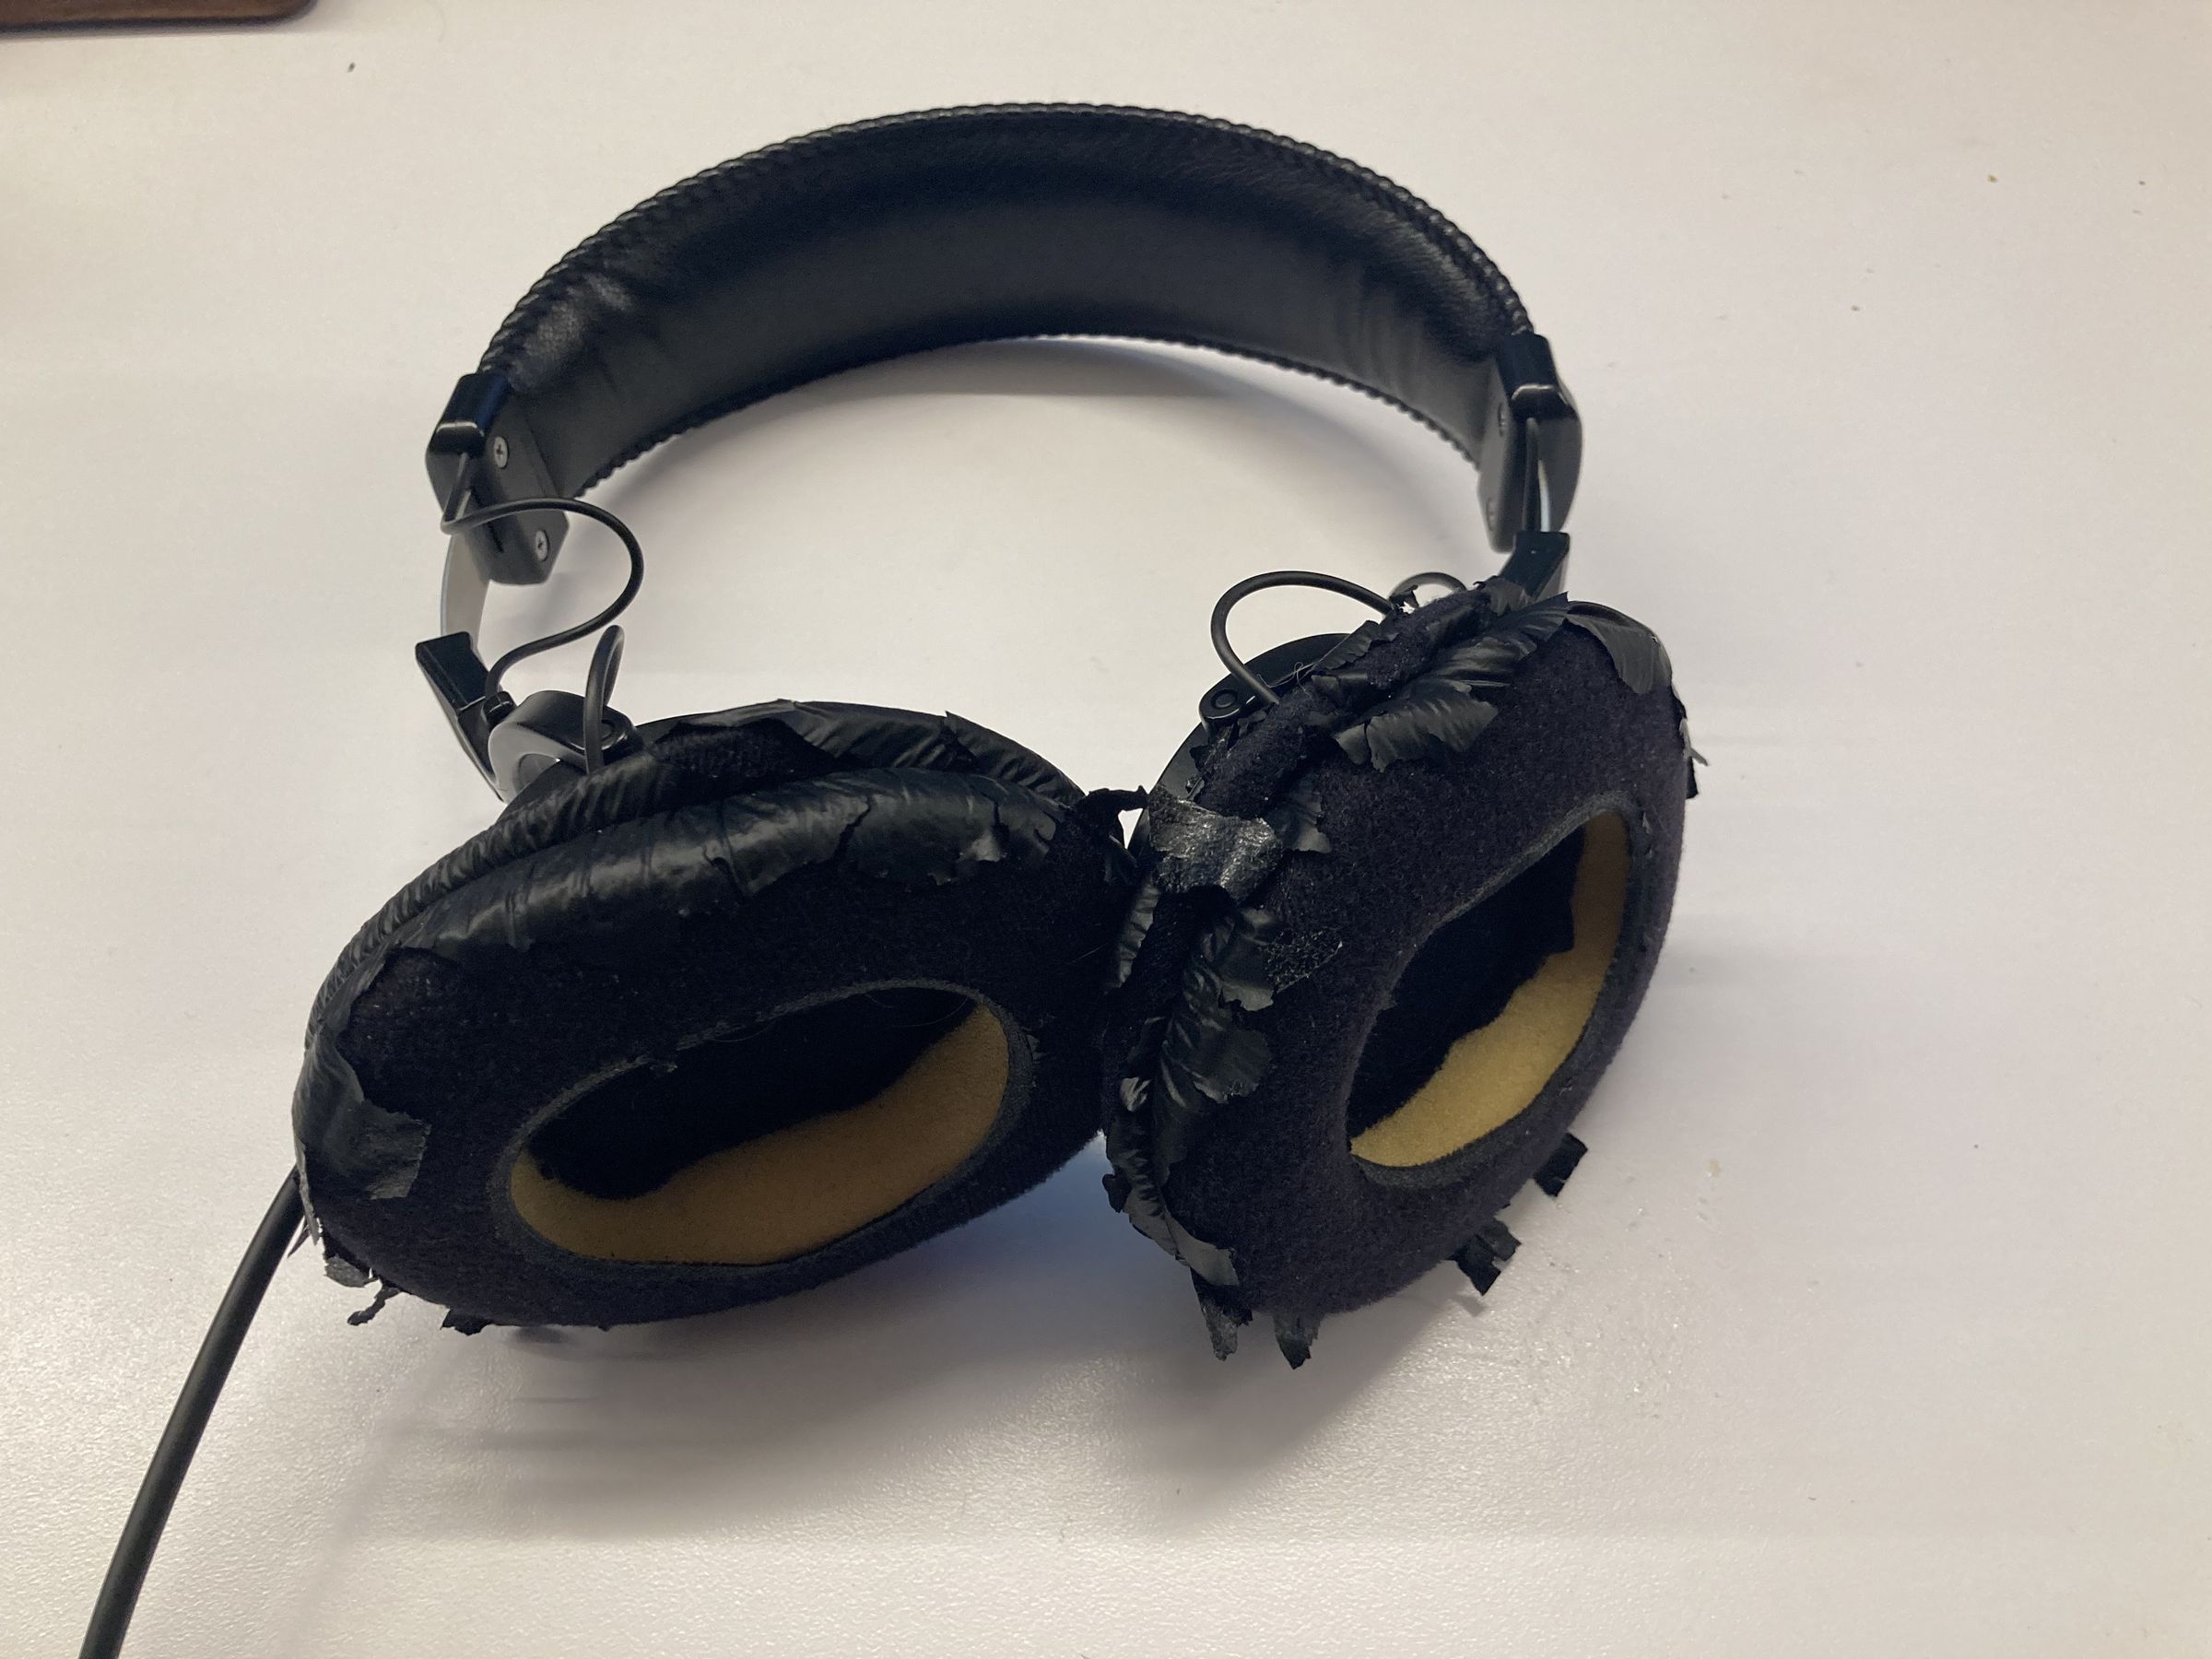 Une paire de Sony MDR-7506 avec des coussinets d'écouteurs très détériorés.